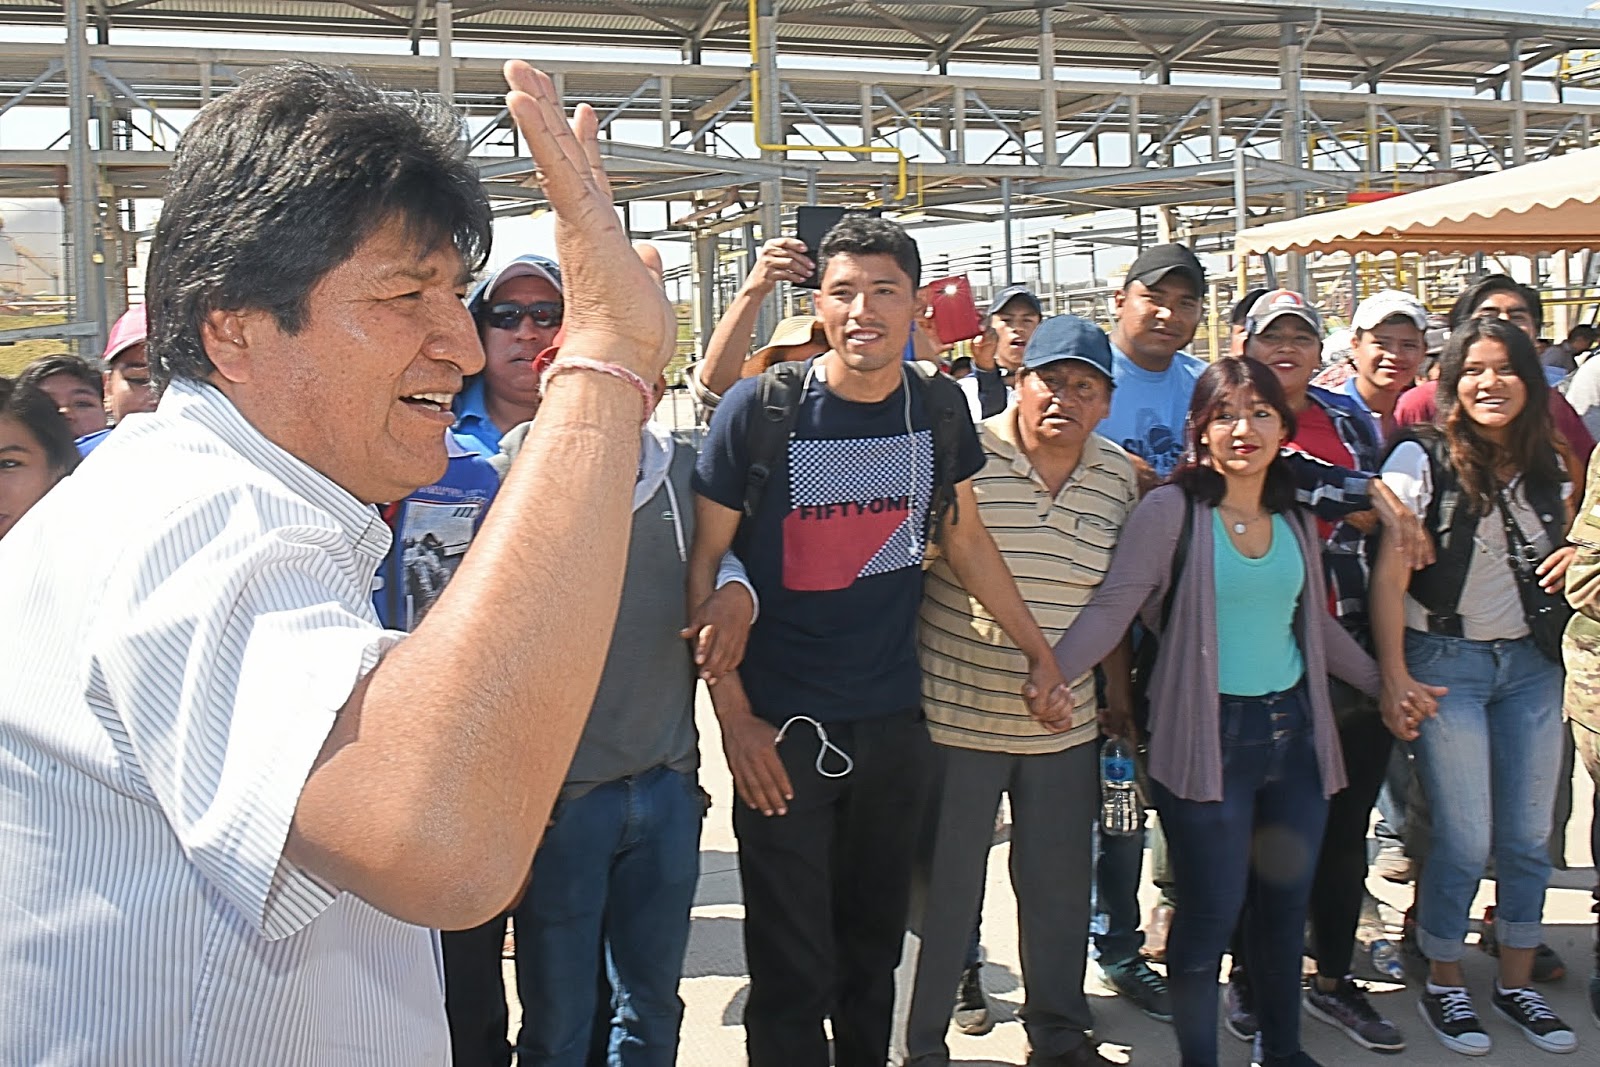 El mandatario candidato cumplió su agenda regular con viajes a Santa Cruz y Tarija sin citar los nuevos rumores en torno suyo / ABI 